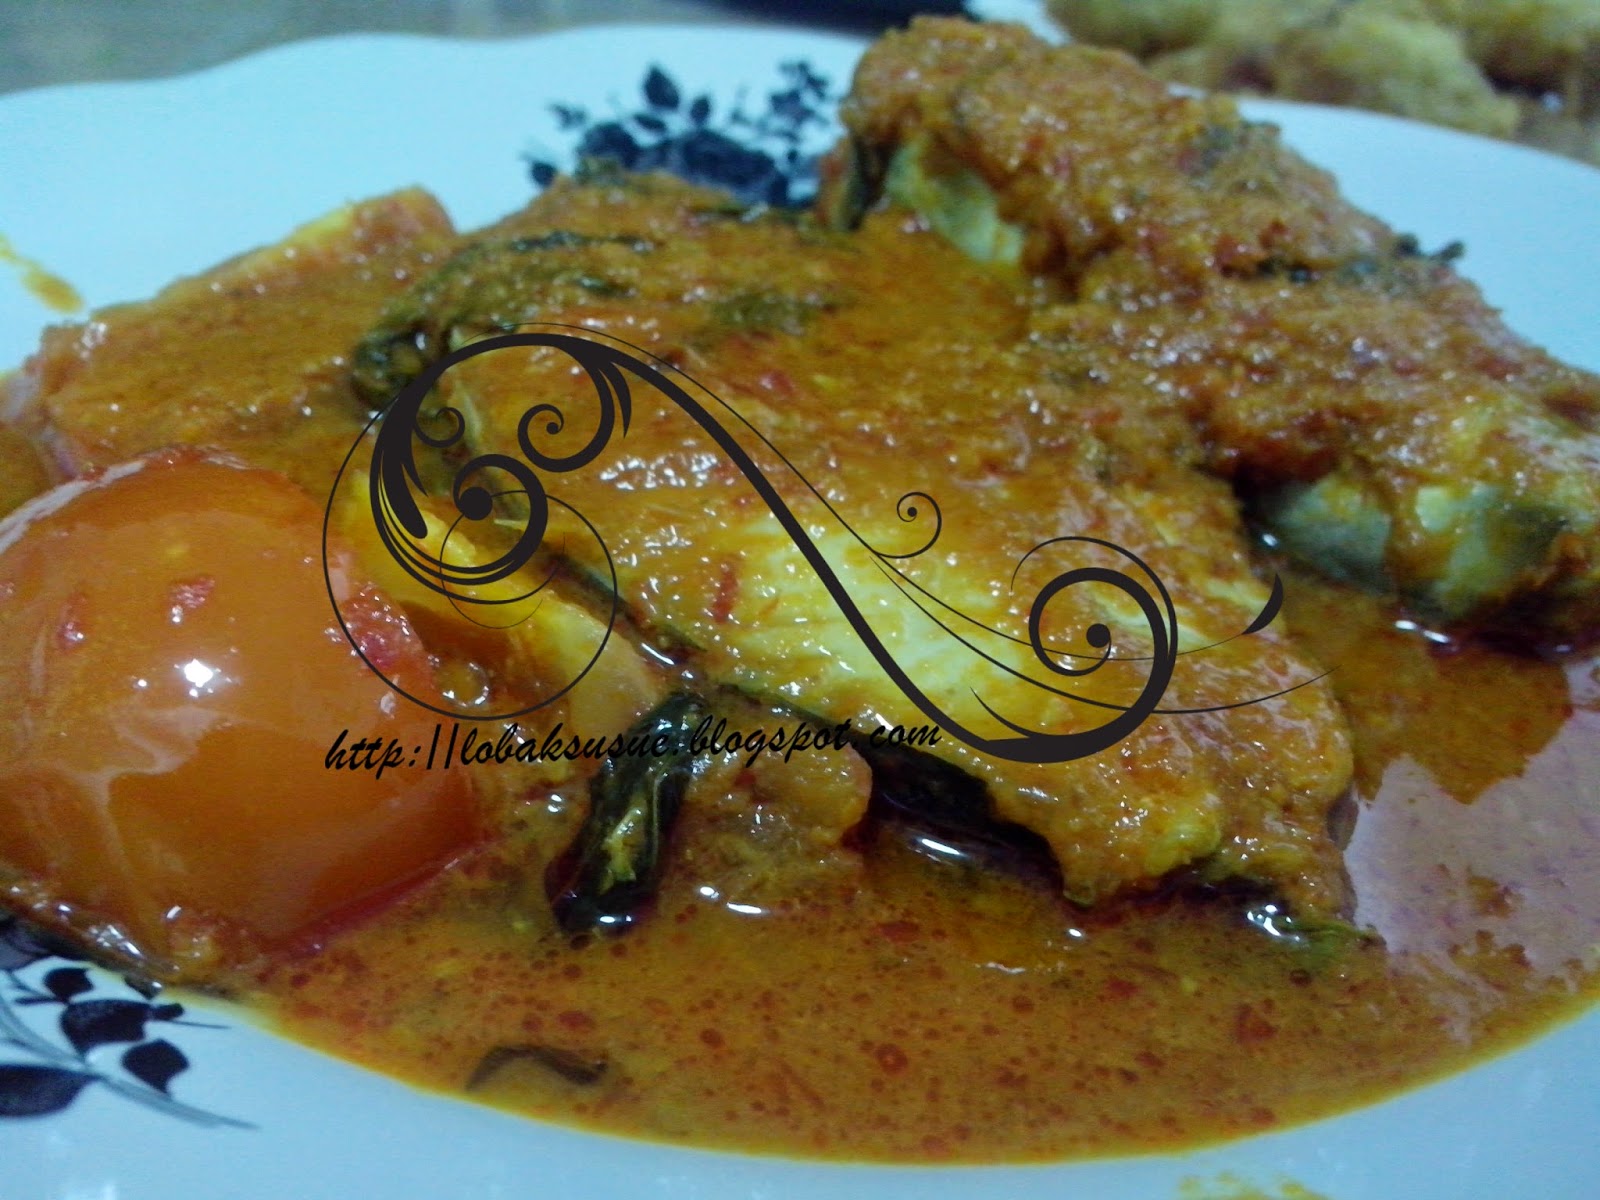 Resepi Asam Pedas Ikan Tenggiri Johor - Recipes Pad g